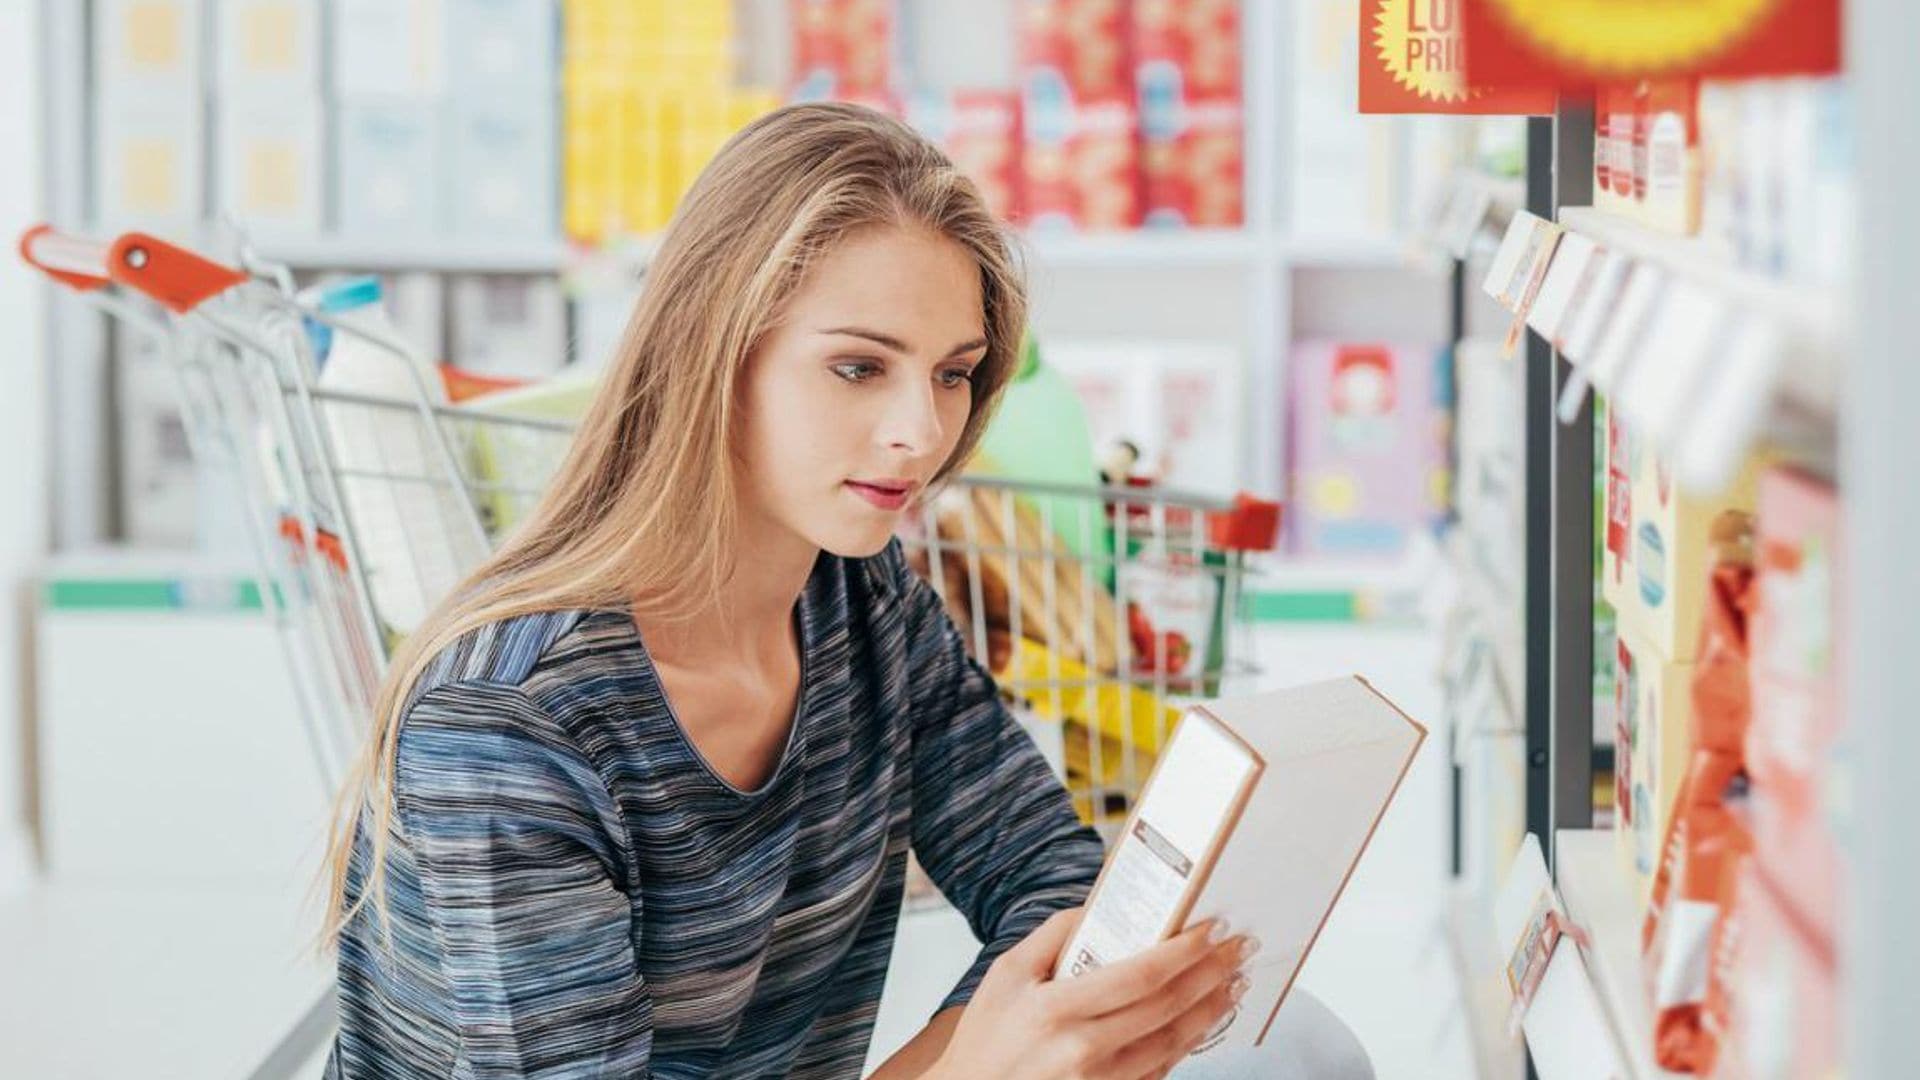 mujer lee etiqueta de empaque en un supermercado